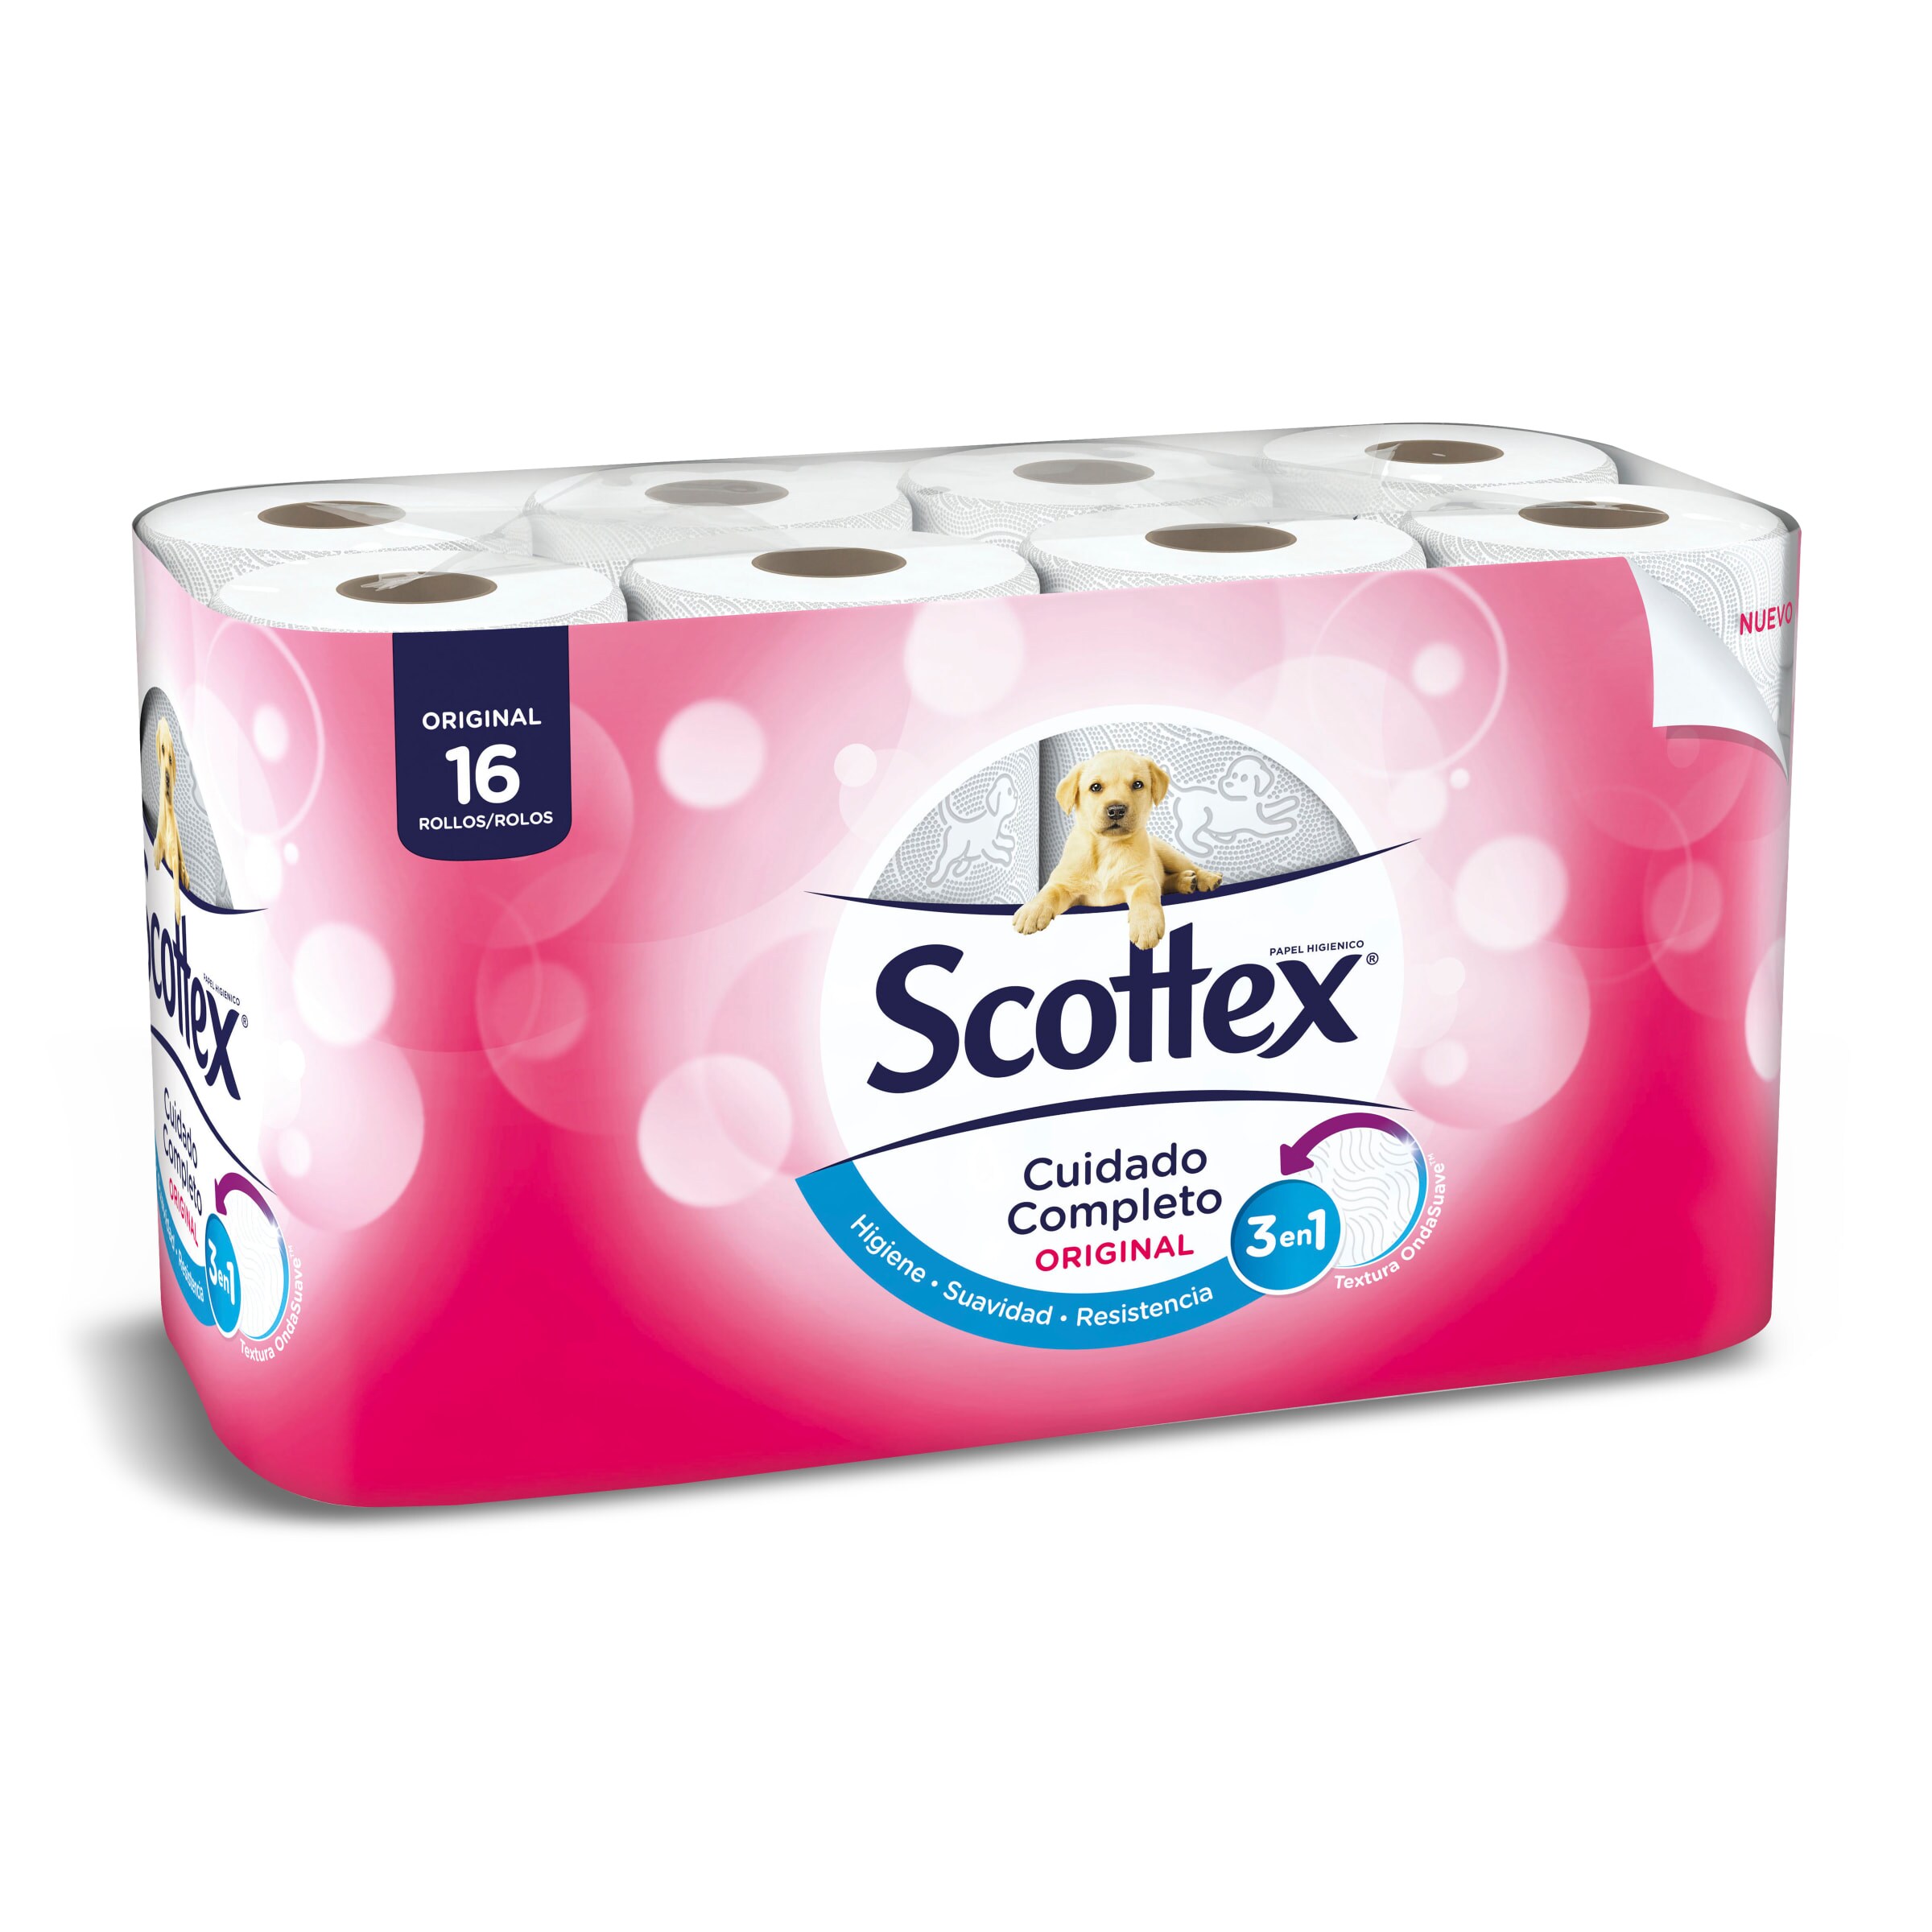 Papel higiénico original Scottex bolsa 16 unidades